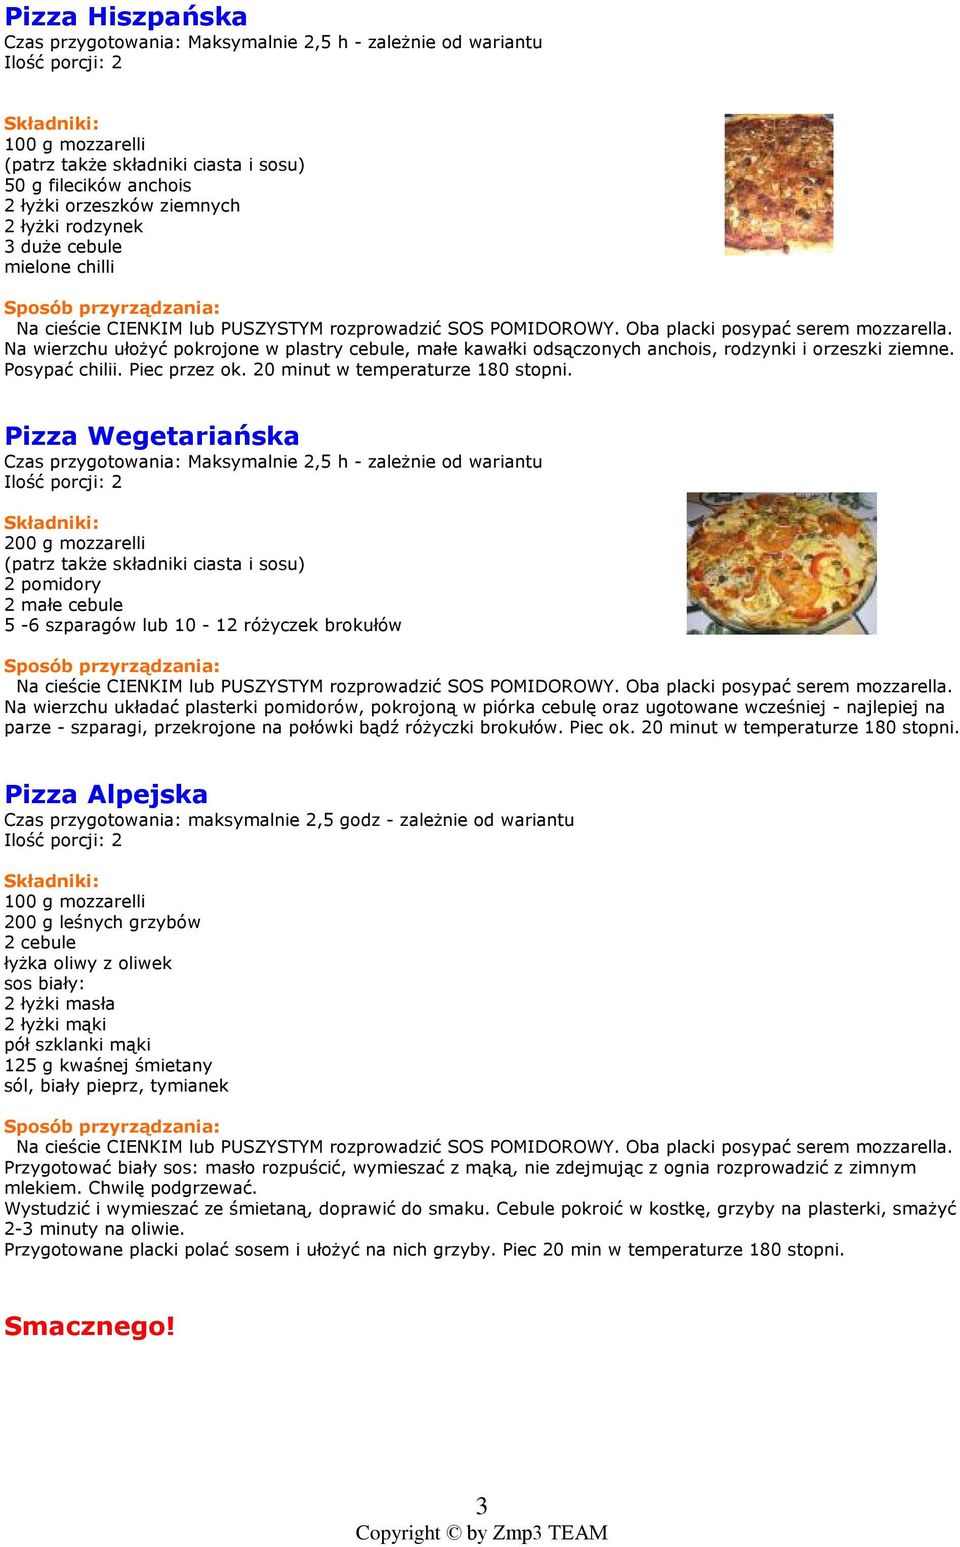 Pizza Wegetariañska 2 pomidory 2 maùe cebule 5-6 szparagów lub 10-12 ró yczek brokuùów Na wierzchu ukùadaã plasterki pomidorów, pokrojon¹ w piórka cebulê oraz ugotowane wczeœniej - najlepiej na parze